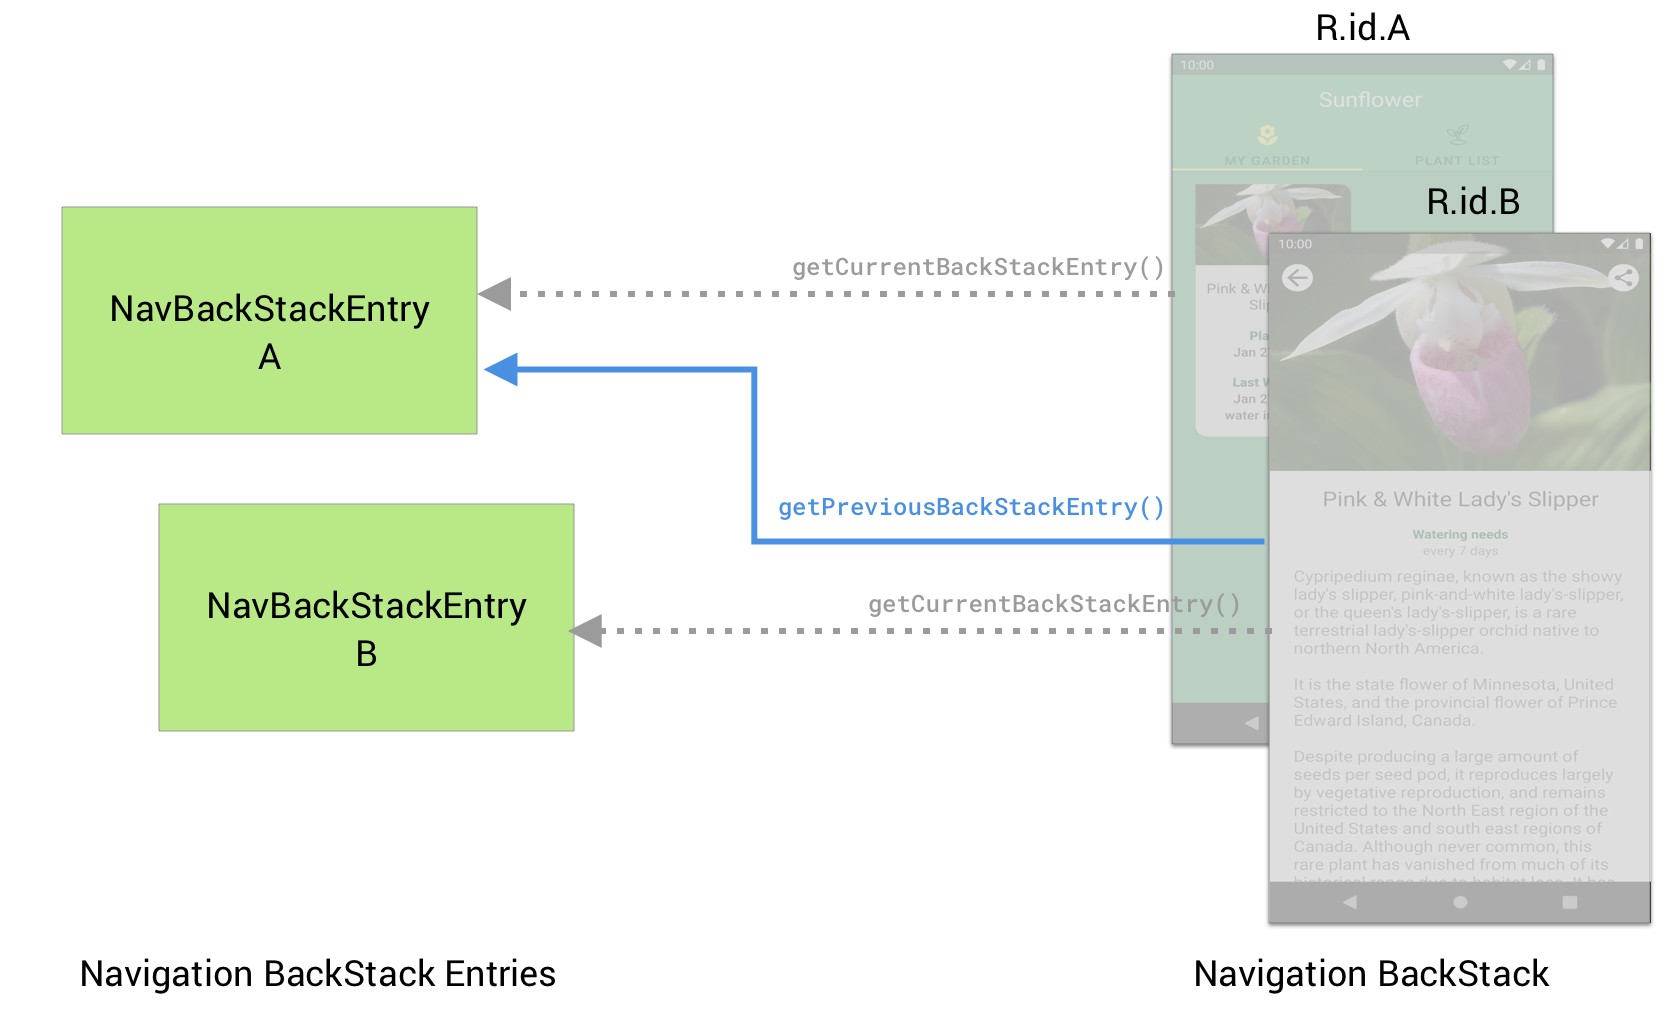 Đích đến B có thể sử dụng getpreviousBackStackEntry() để truy xuất NavBackStackEntry cho đích đến A trước đó